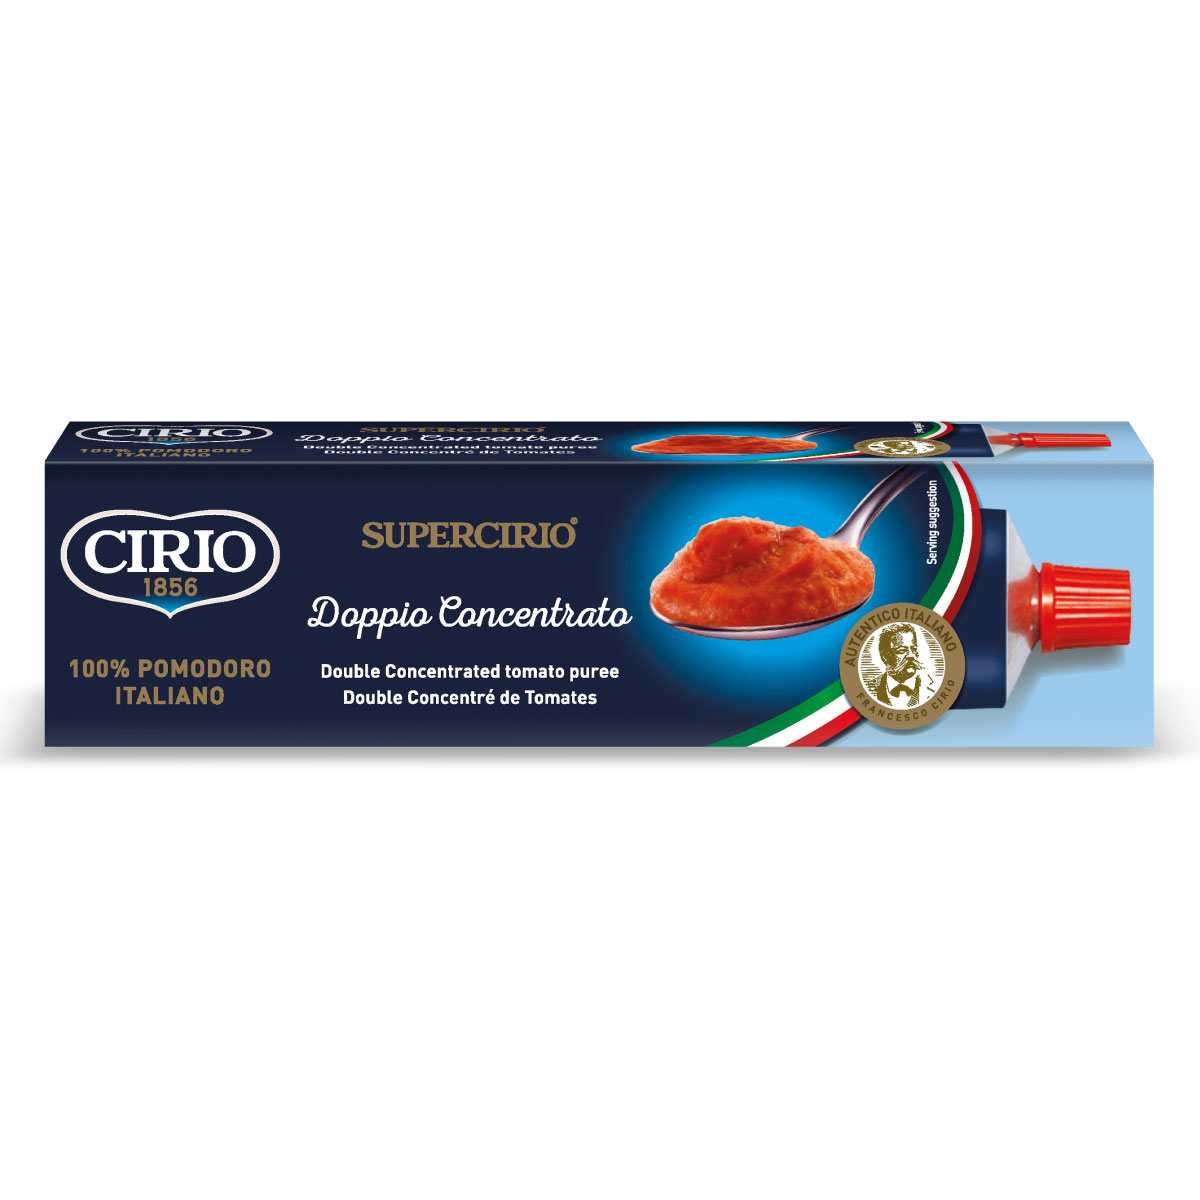 Double-Concentrated Tomato Puree Tube Cirio